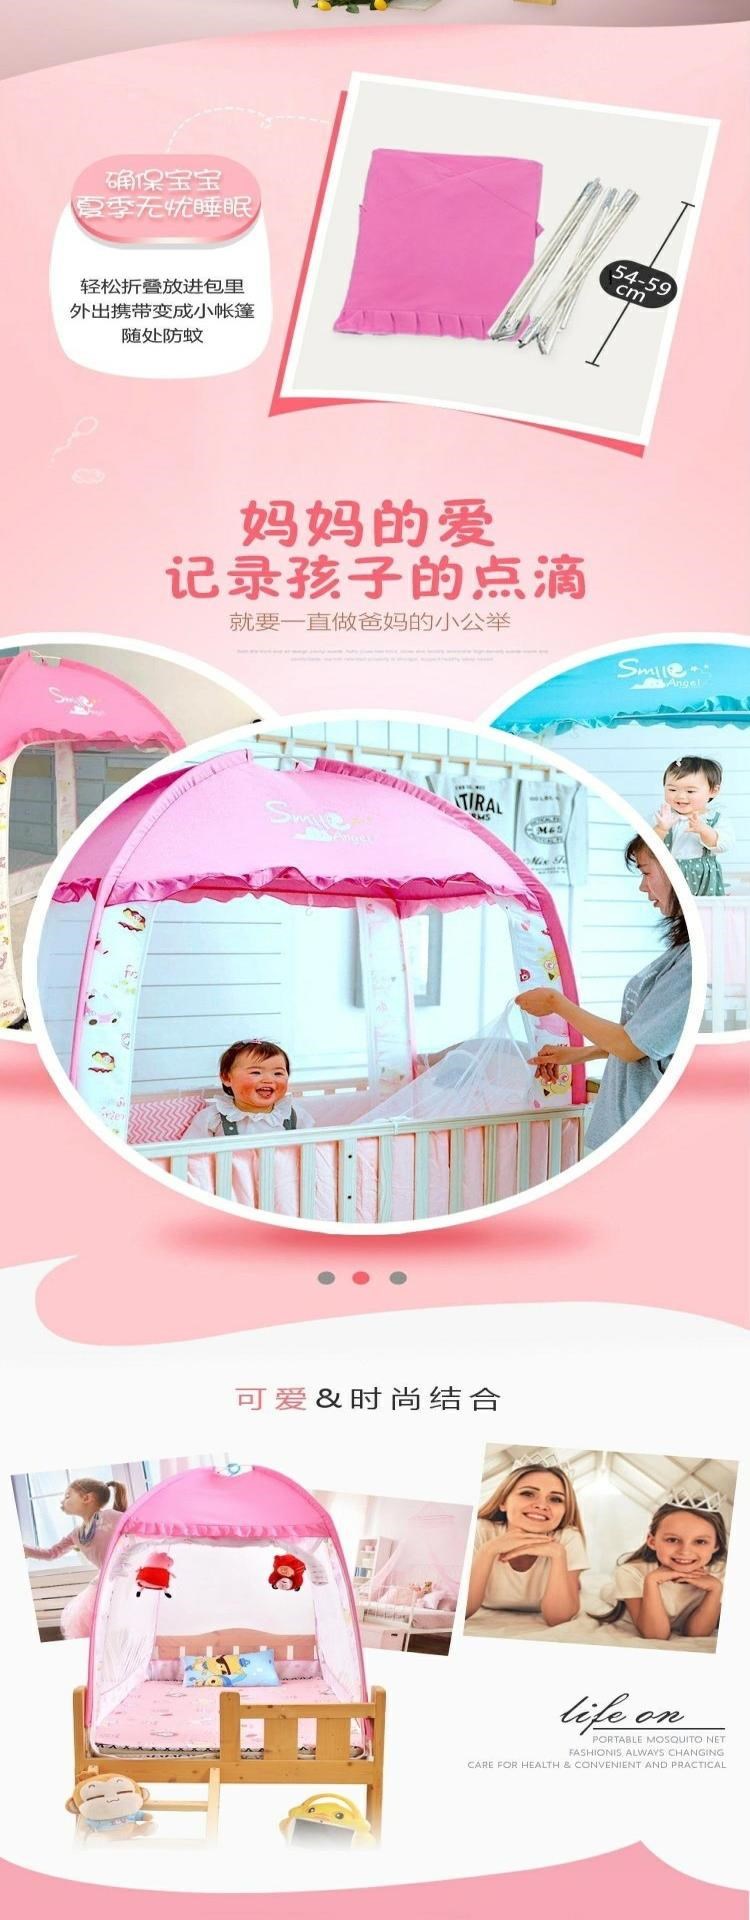 x168 yurt Mông Cổ 88x168 trải giường màu hồng 1,2x mùng khâu 88 mới 80 trẻ em 180 bé nam - Lưới chống muỗi